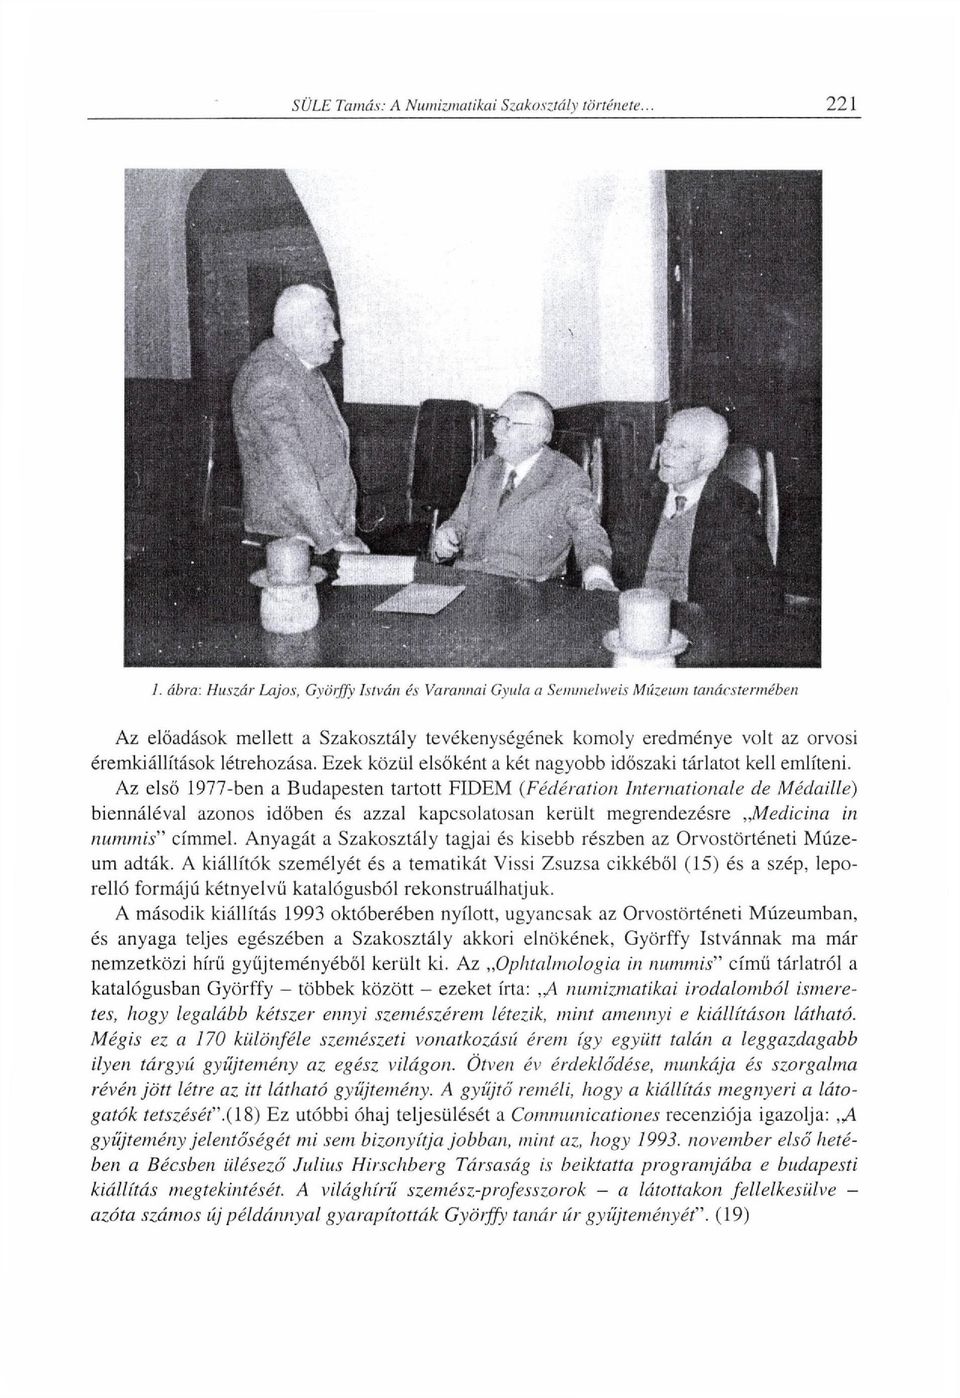 Az első 1977-ben a Budapesten tartott FIDEM (Fédération Internationale de Médaille) biennáléval azonos időben és azzal kapcsolatosan került megrendezésre Medicina in minimis" címmel.